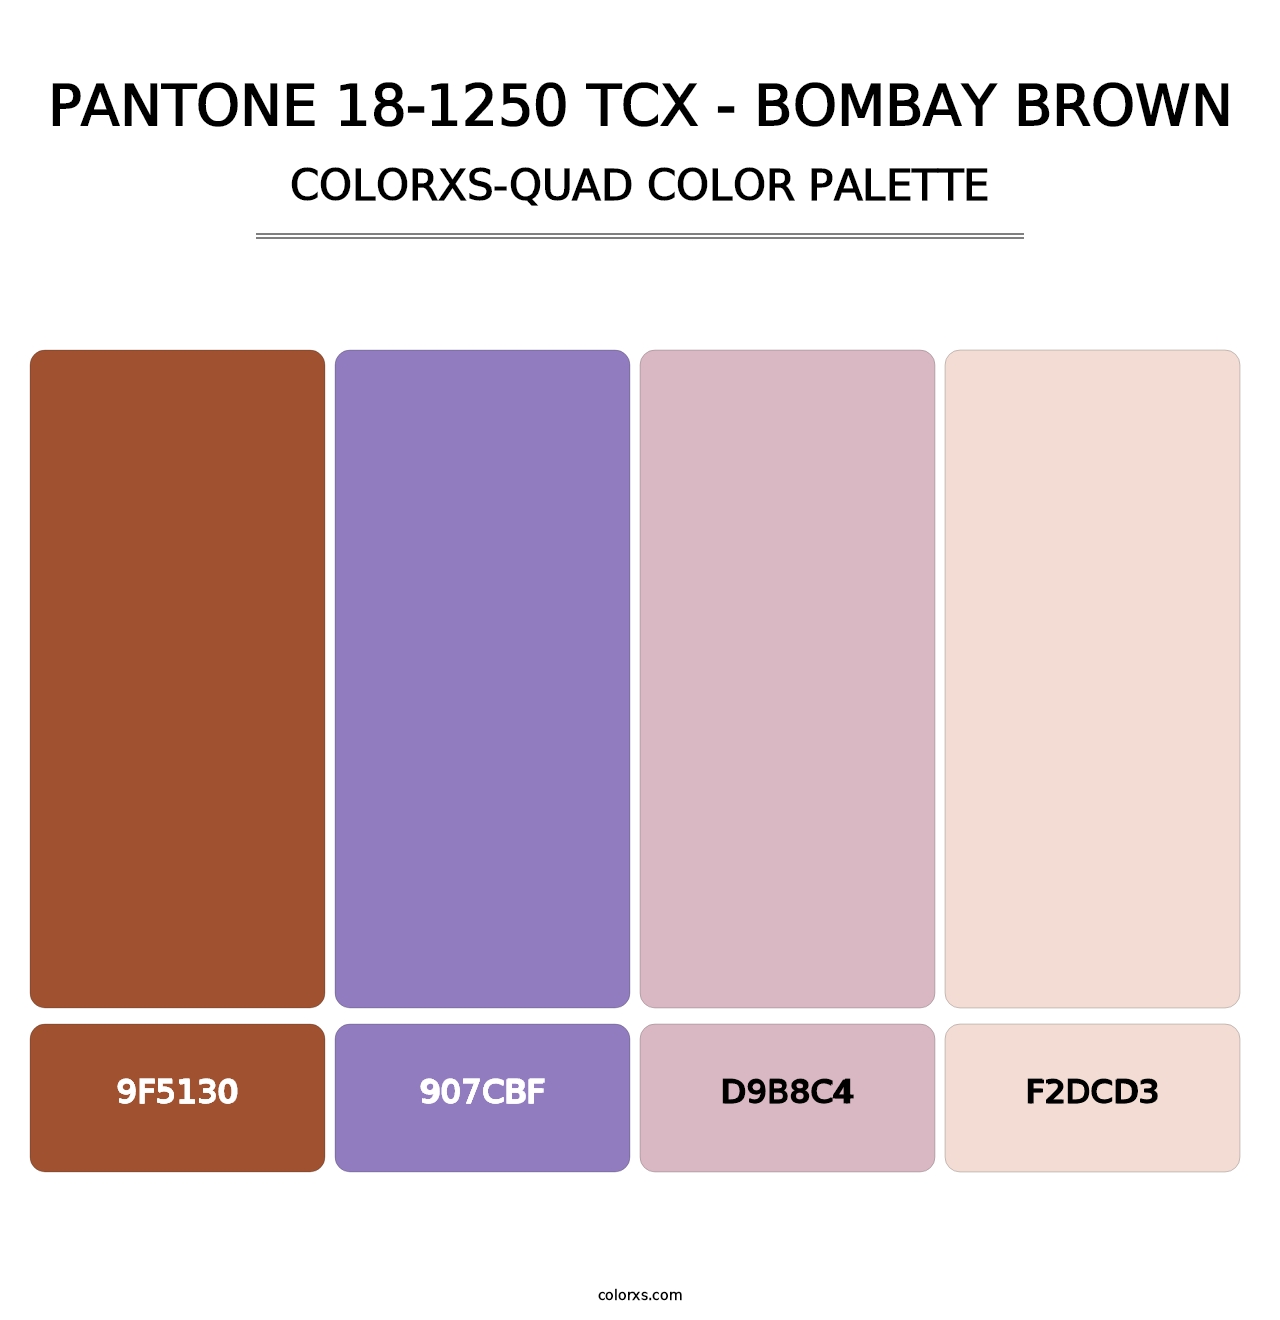 PANTONE 18-1250 TCX - Bombay Brown - Colorxs Quad Palette